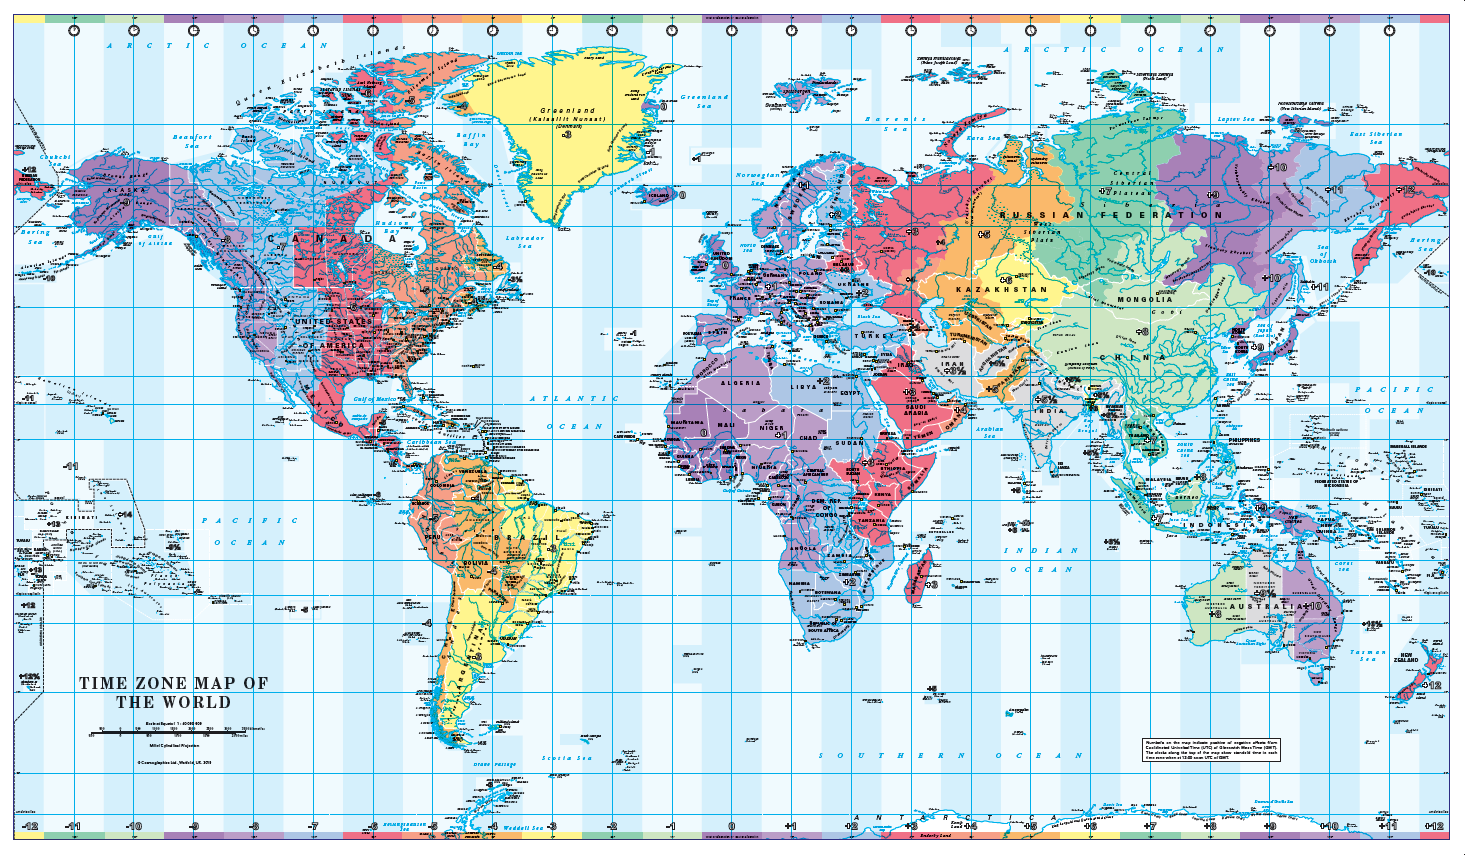 World Timezones Map - colour blind friendly